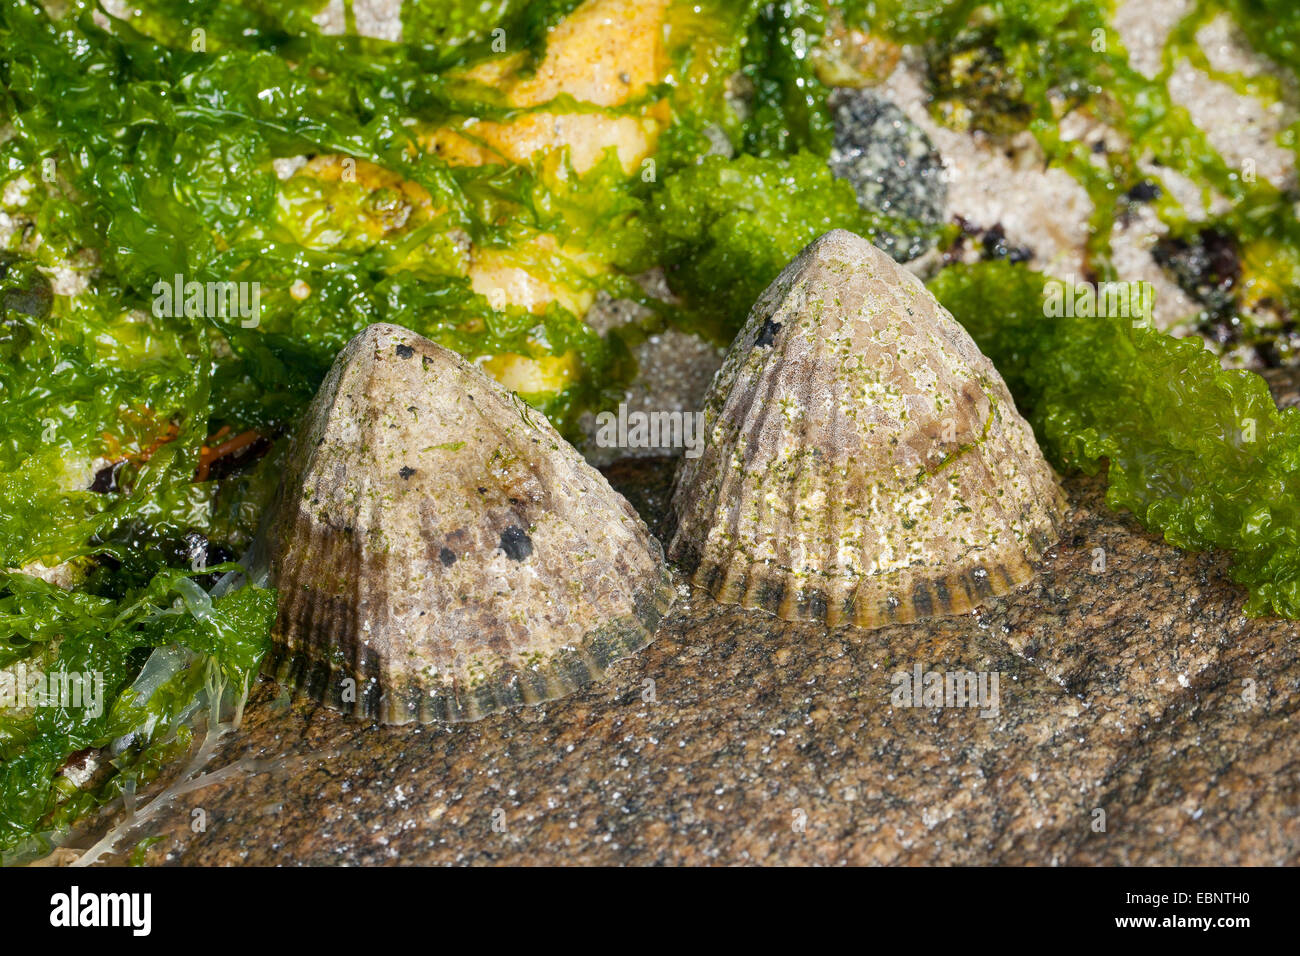 Limpet comune, Politica europea comune in materia di limpet (Patella vulgata), due patelle a bassa marea su una roccia, Germania Foto Stock